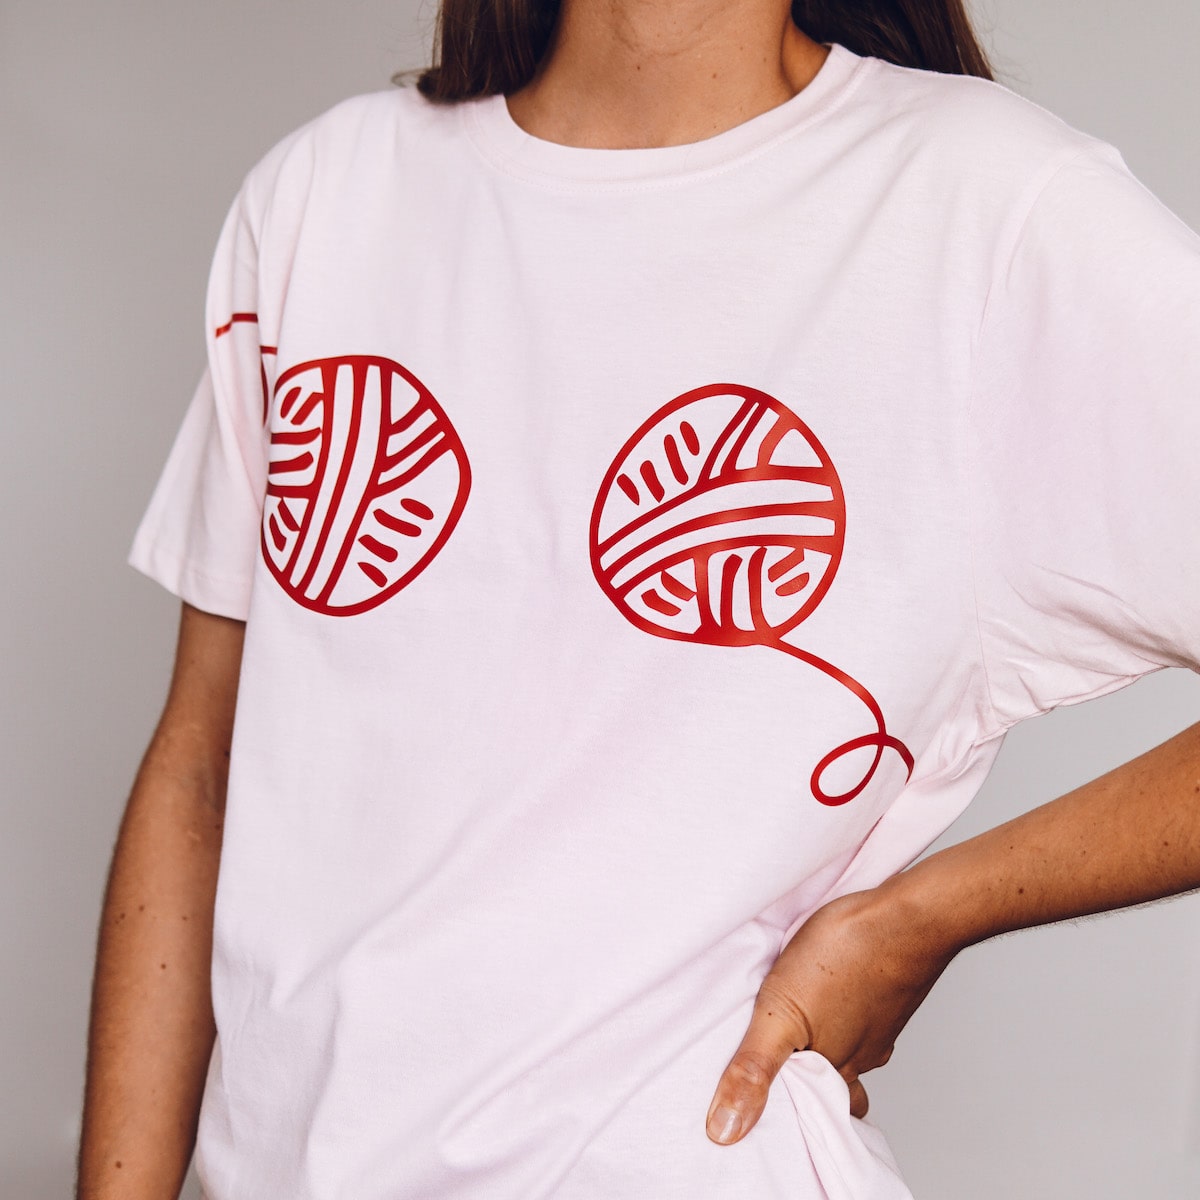 Wool Boobs T-shirt - Lauren Aston Designs